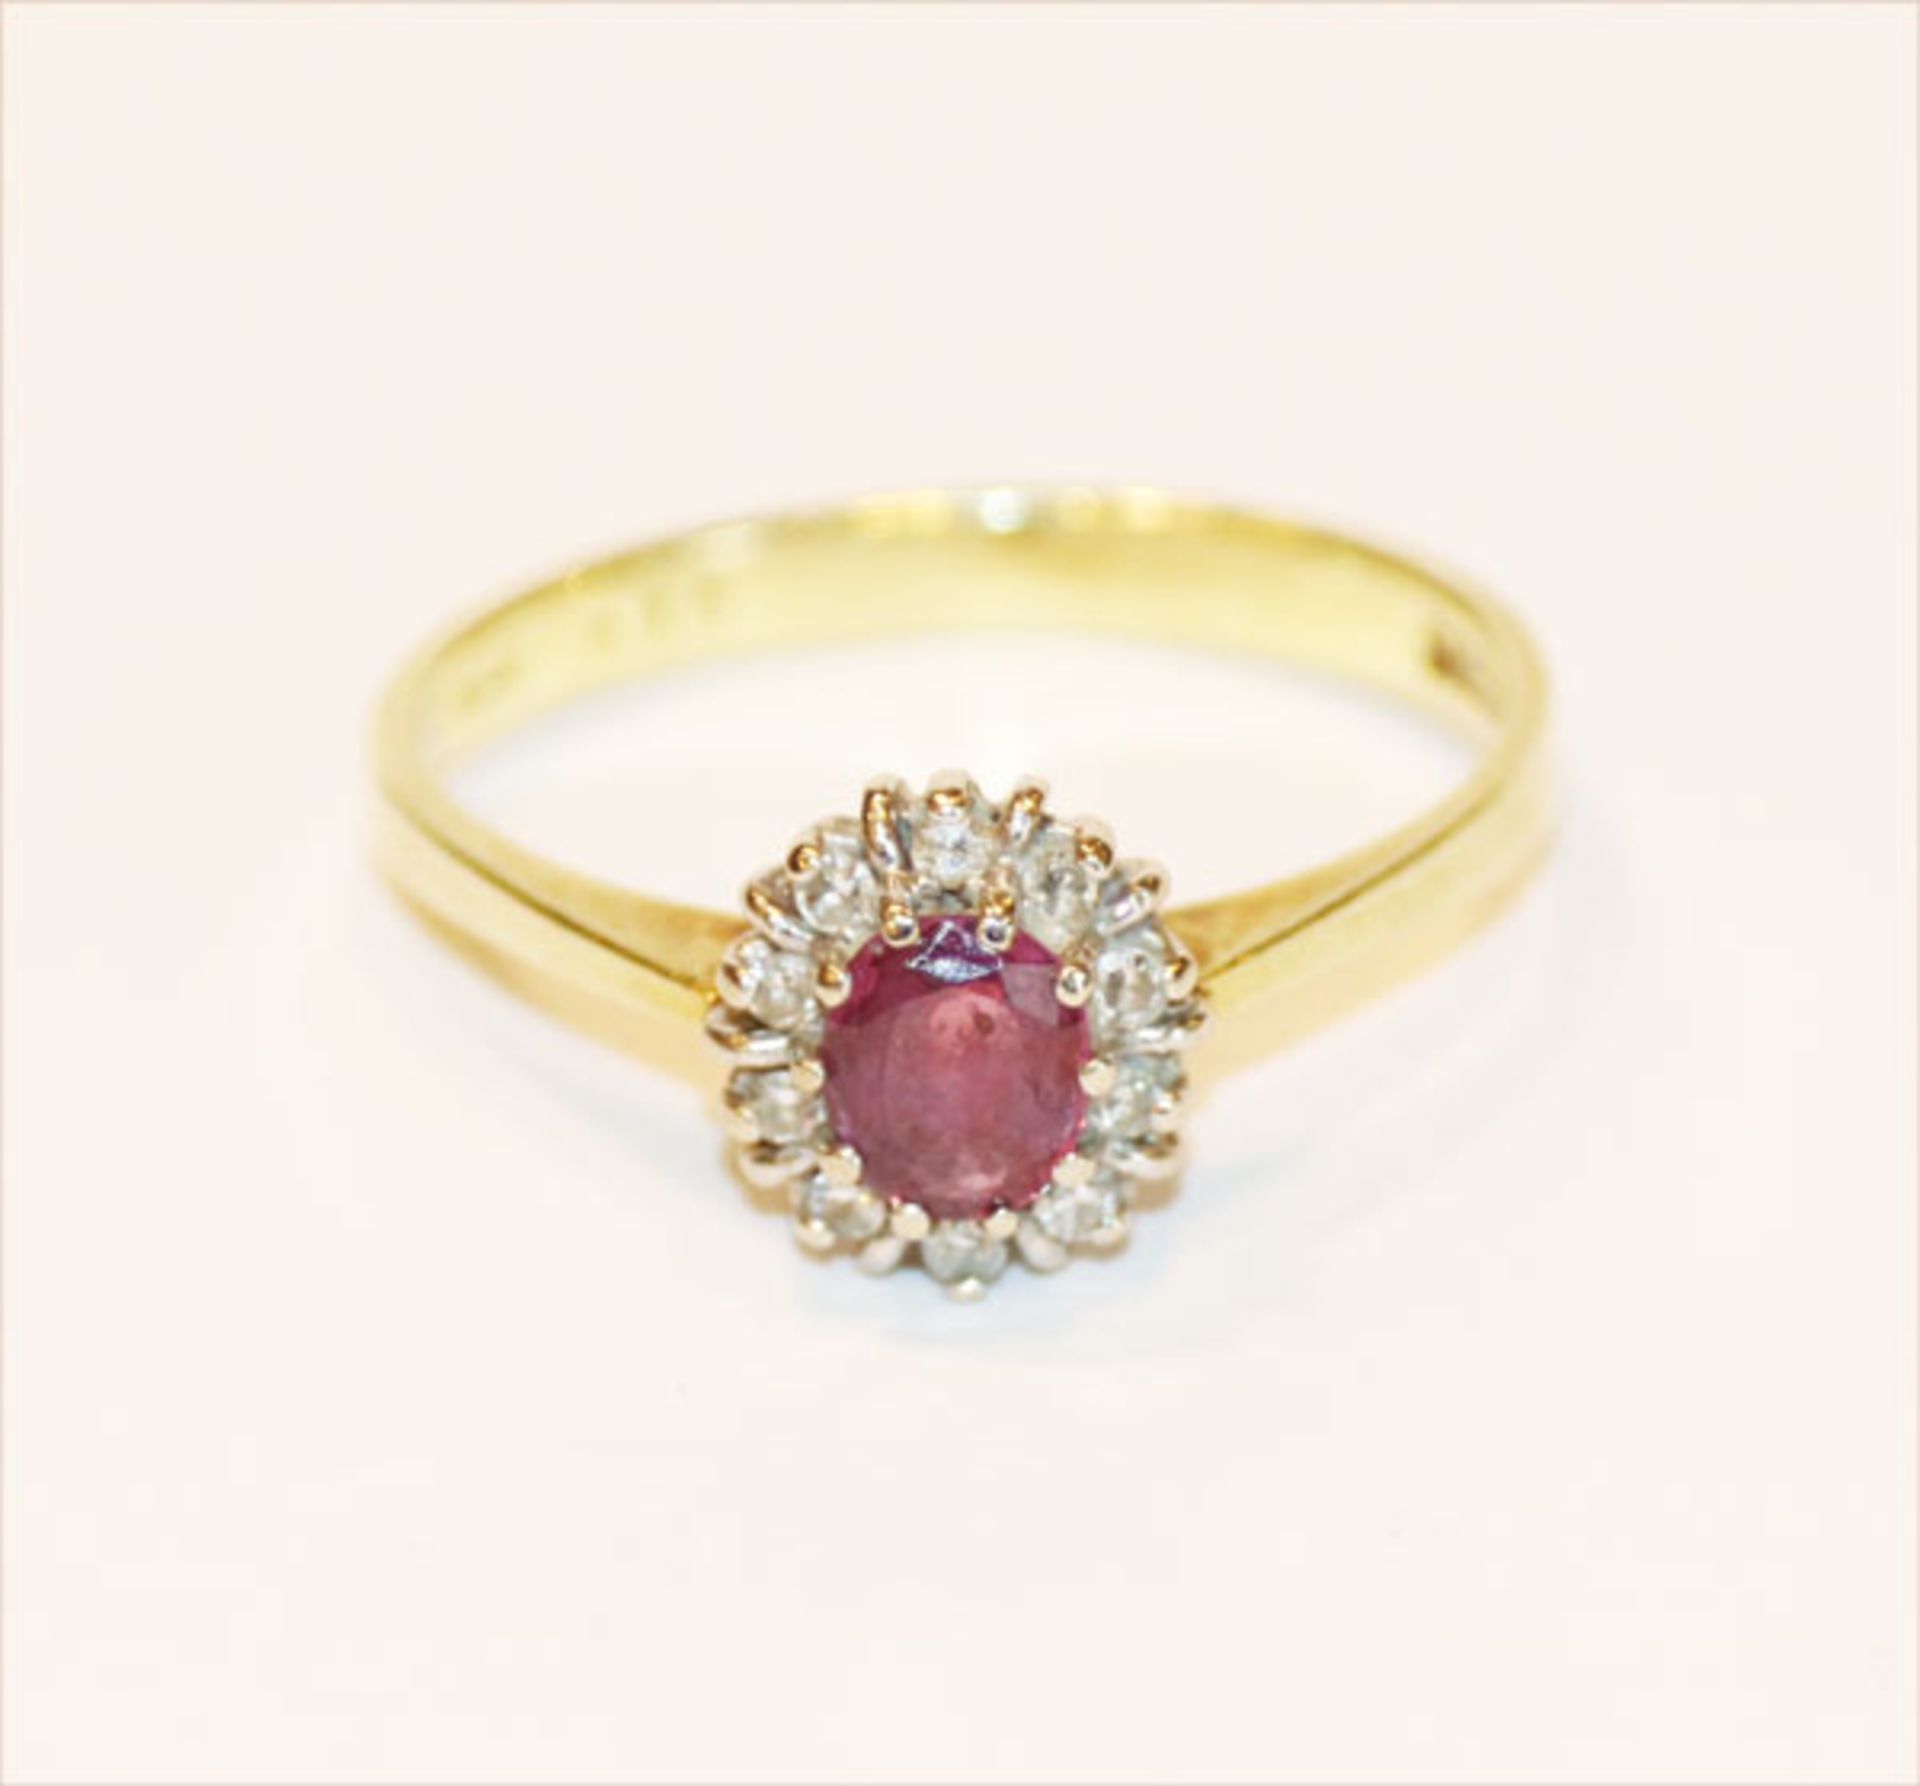 14 k Gelbgold Ring mit Rubin und Diamantkranz, 2,4 gr., Gr. 53